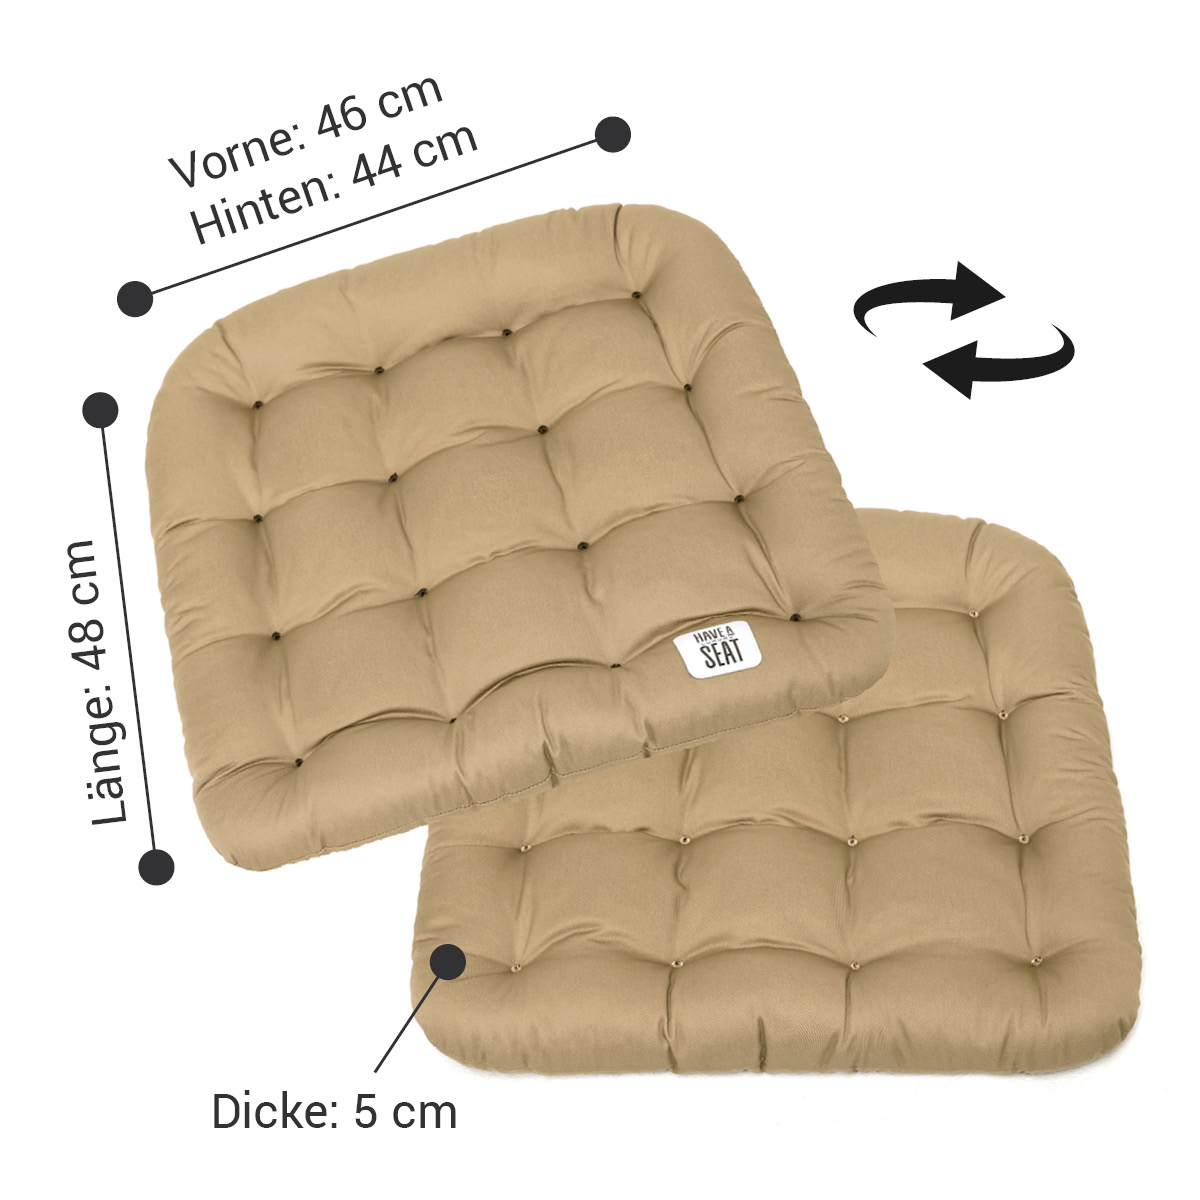 Premium Sitzkissen 48x46, 5 cm dicke Riegel-Polsterung (kälteabweisend), das Kissen kann auf beiden Seiten verwendet werden | HAVE A SEAT Living